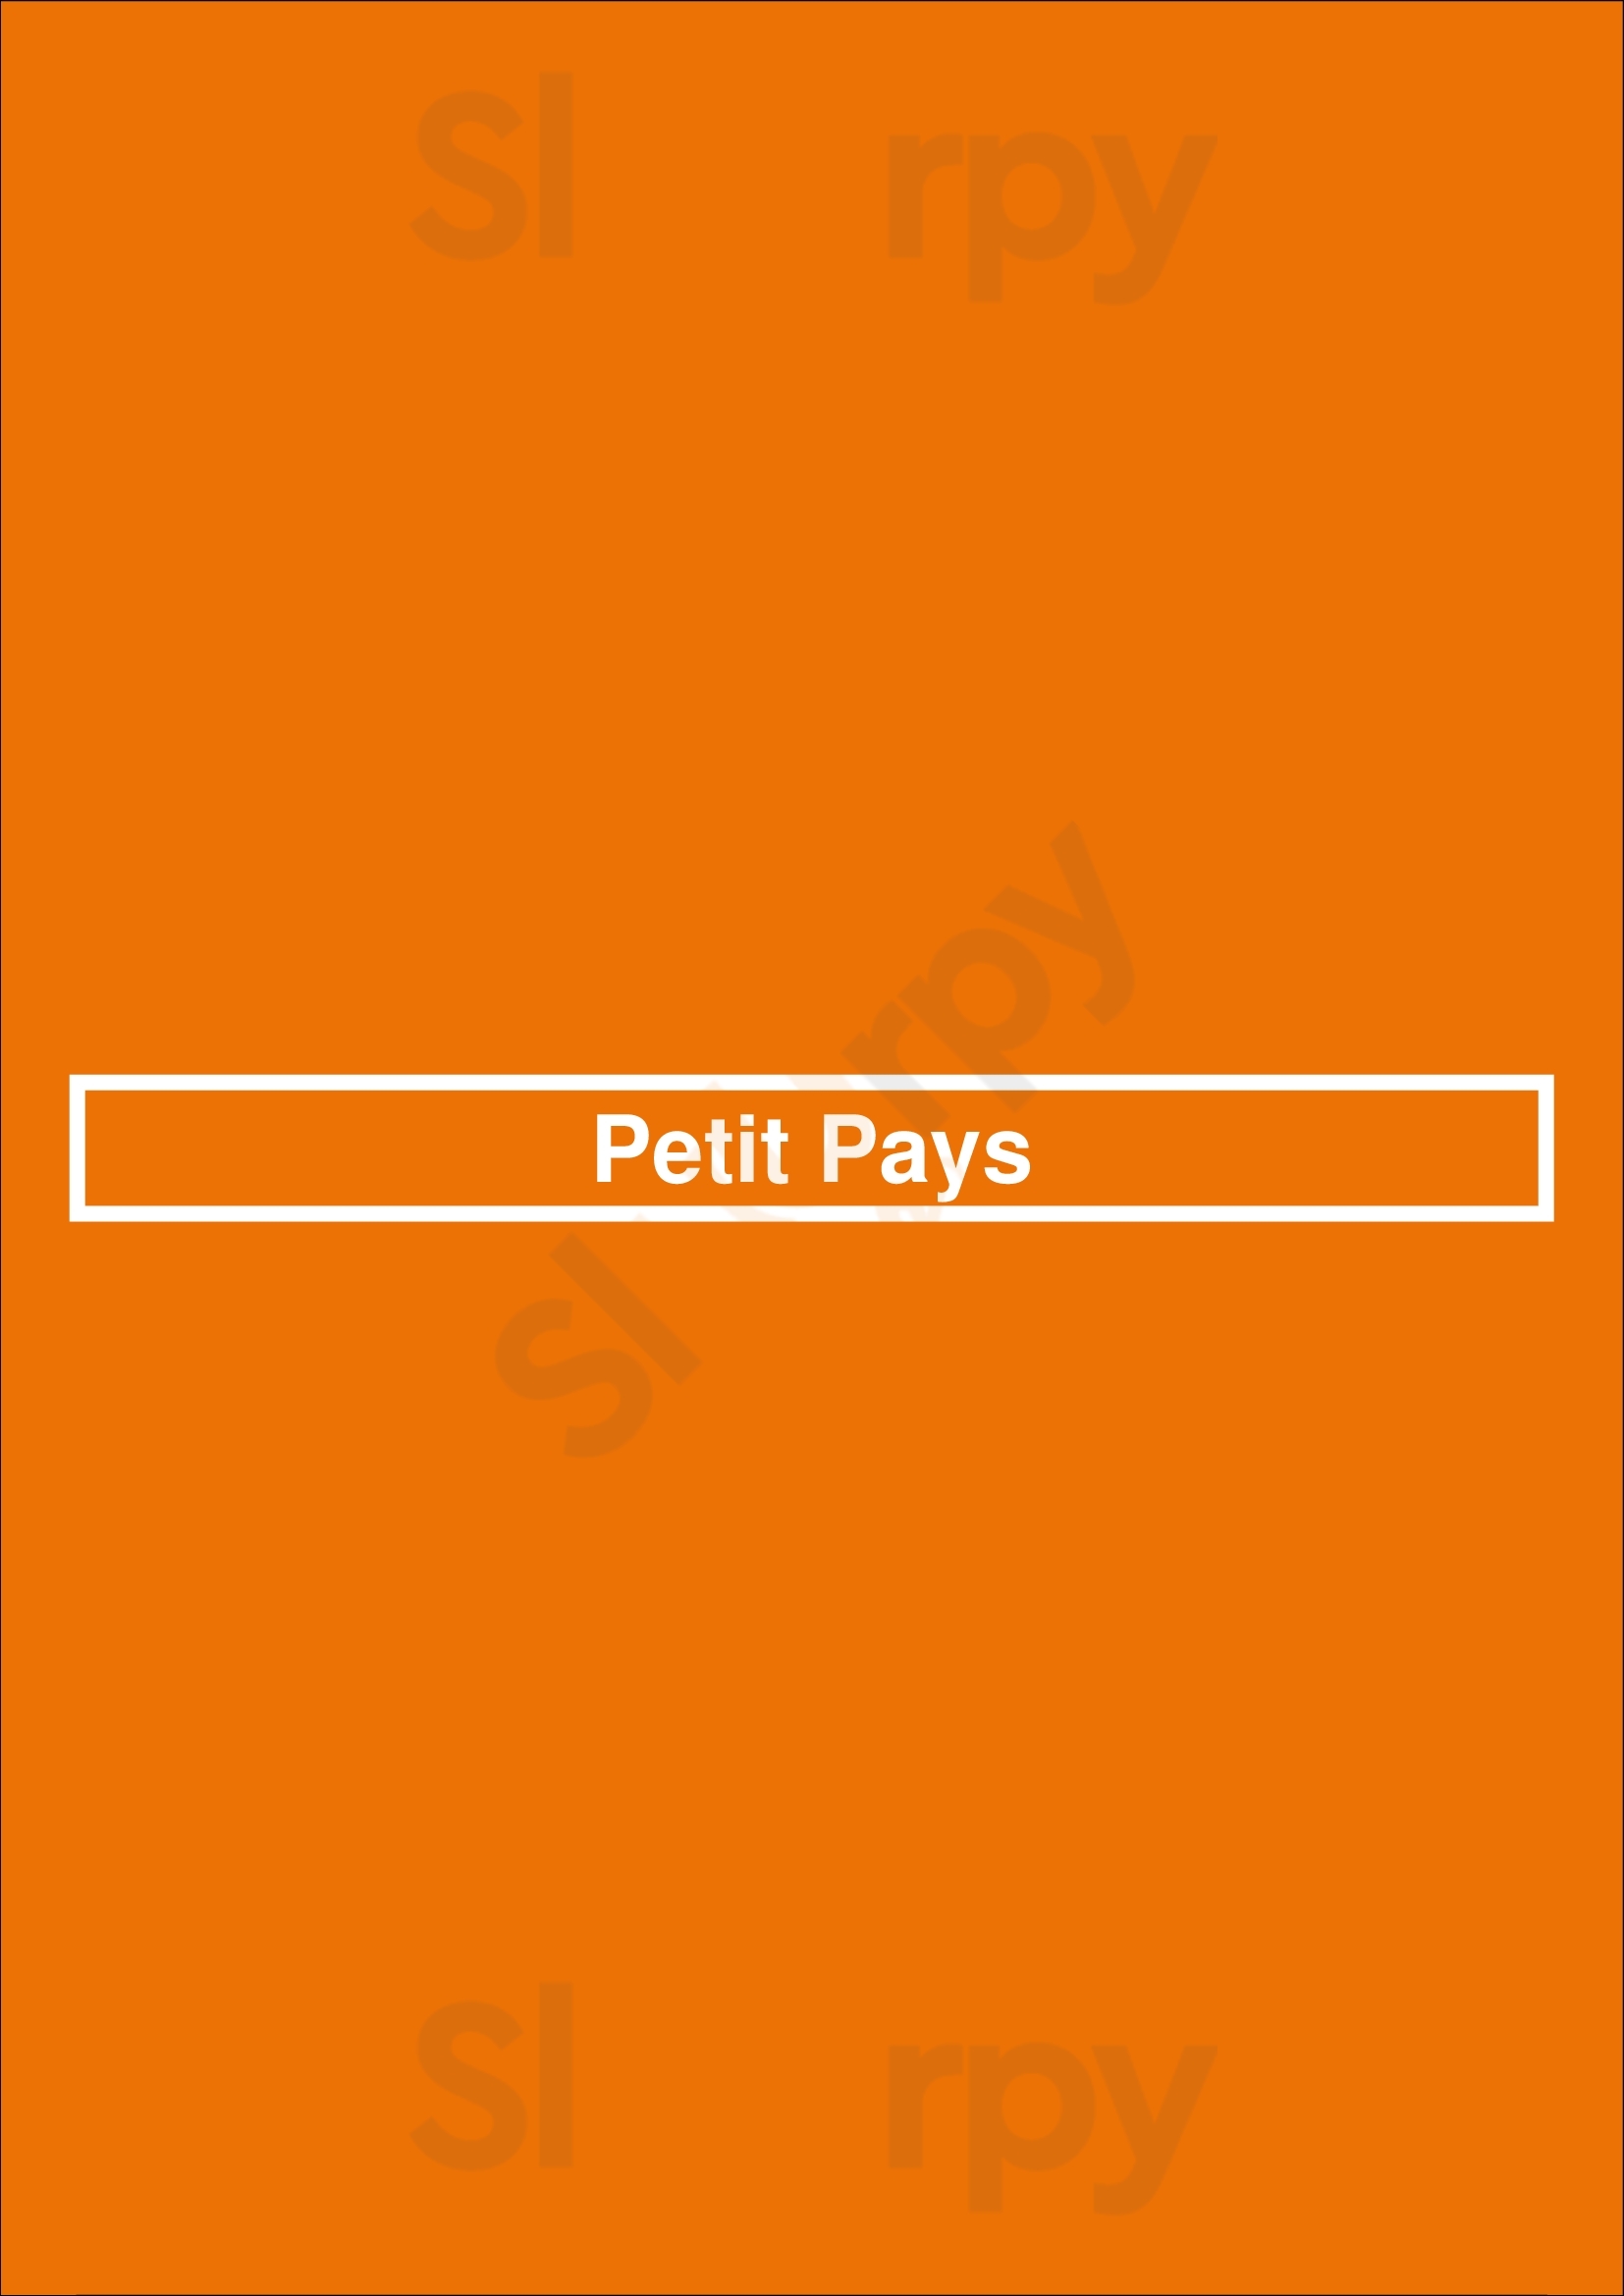 Petit Pays Paris Menu - 1